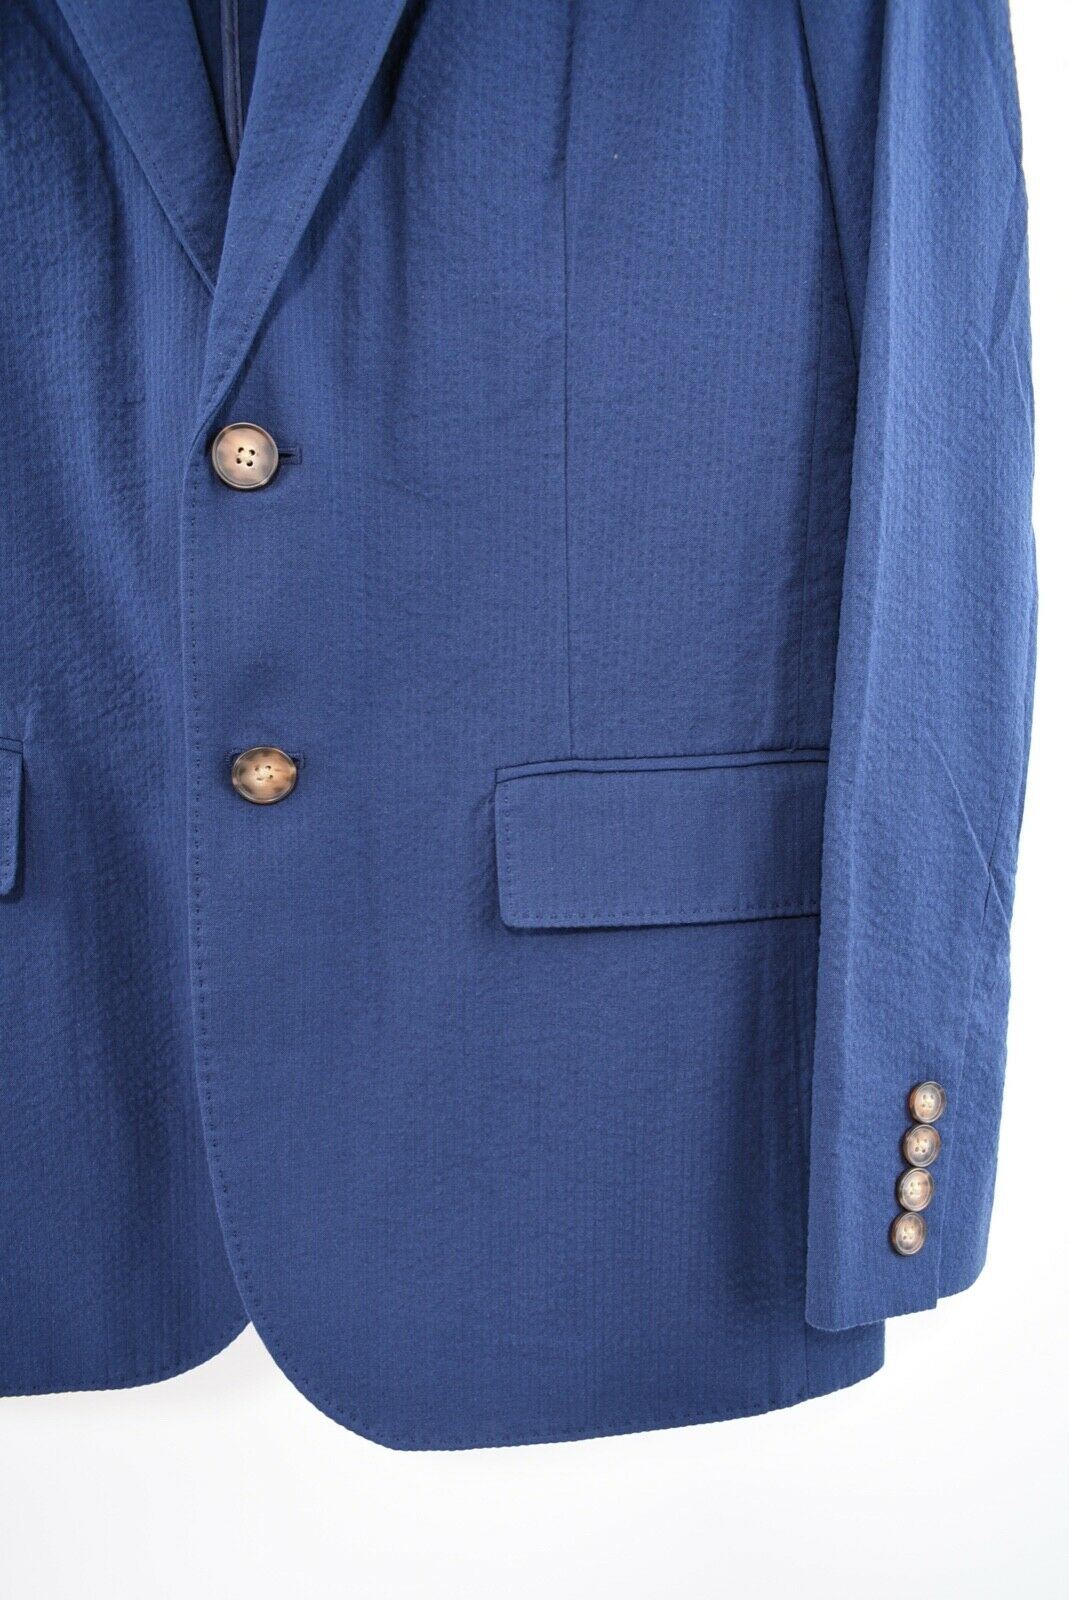 POLO RALPH LAUREN Women's Navy Blue Seersucker Blazer, size UK 8